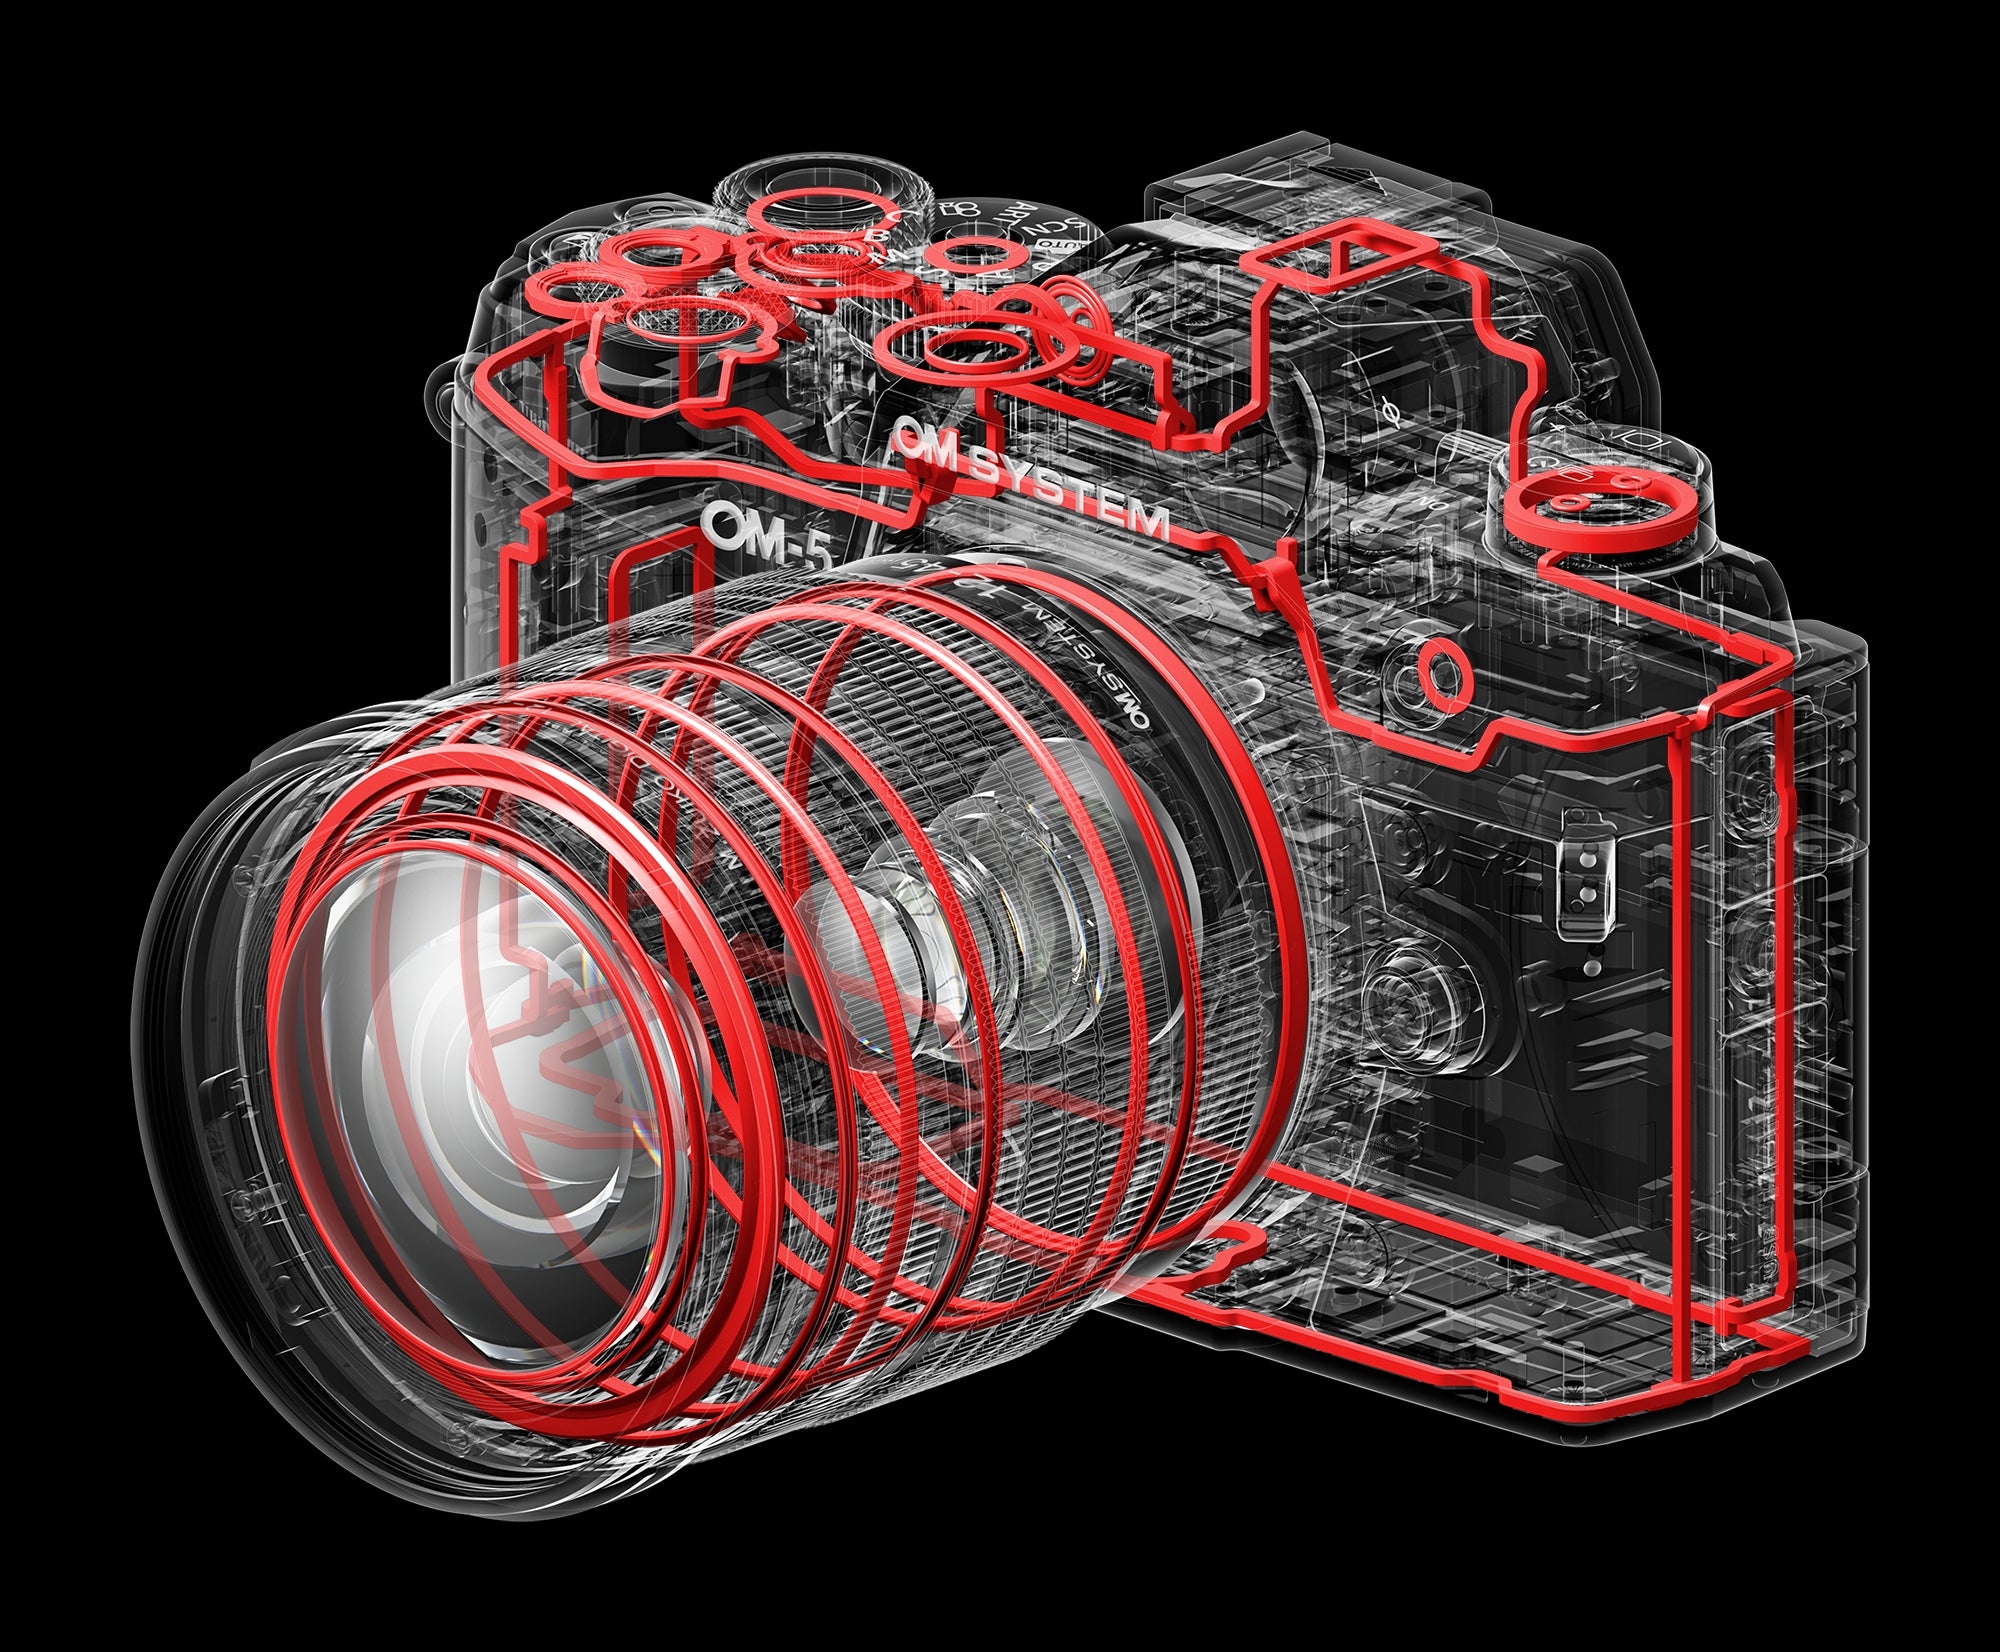 Verkauf zu Schnäppchenpreisen Olympus OM System OM-5 Silver with L Camera Mirrorless 12-45mm Digital